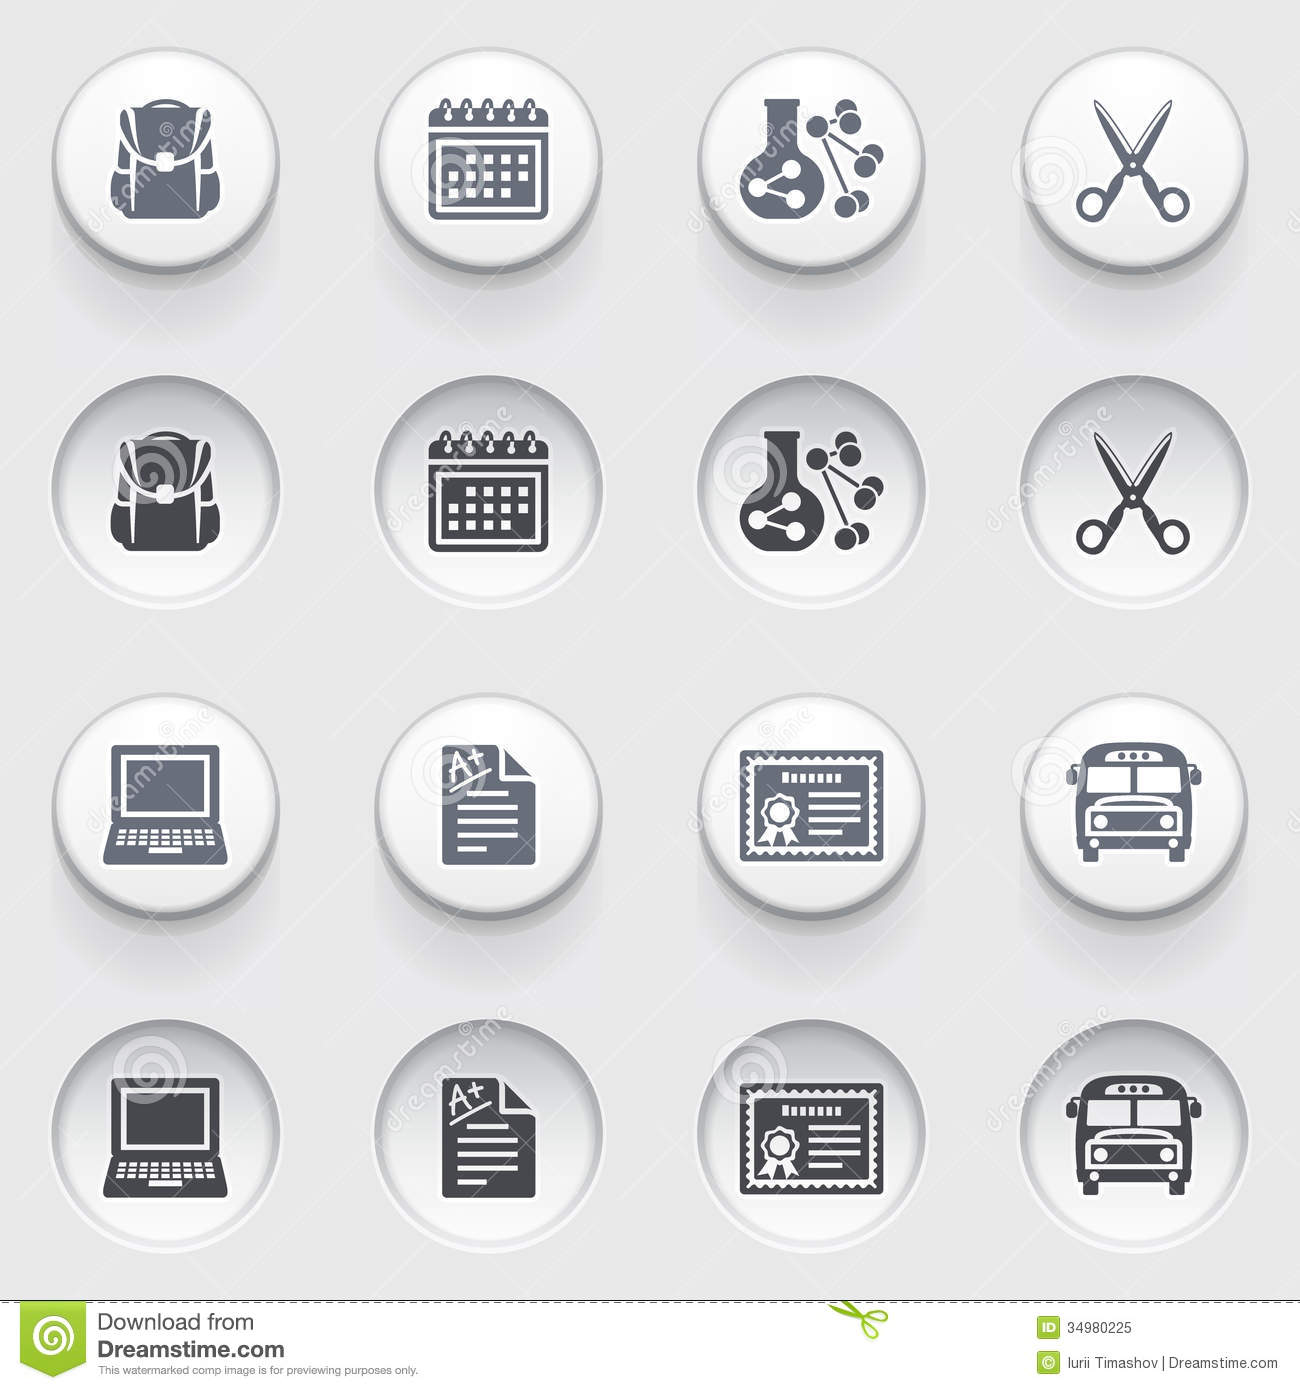 White Button Icons Free